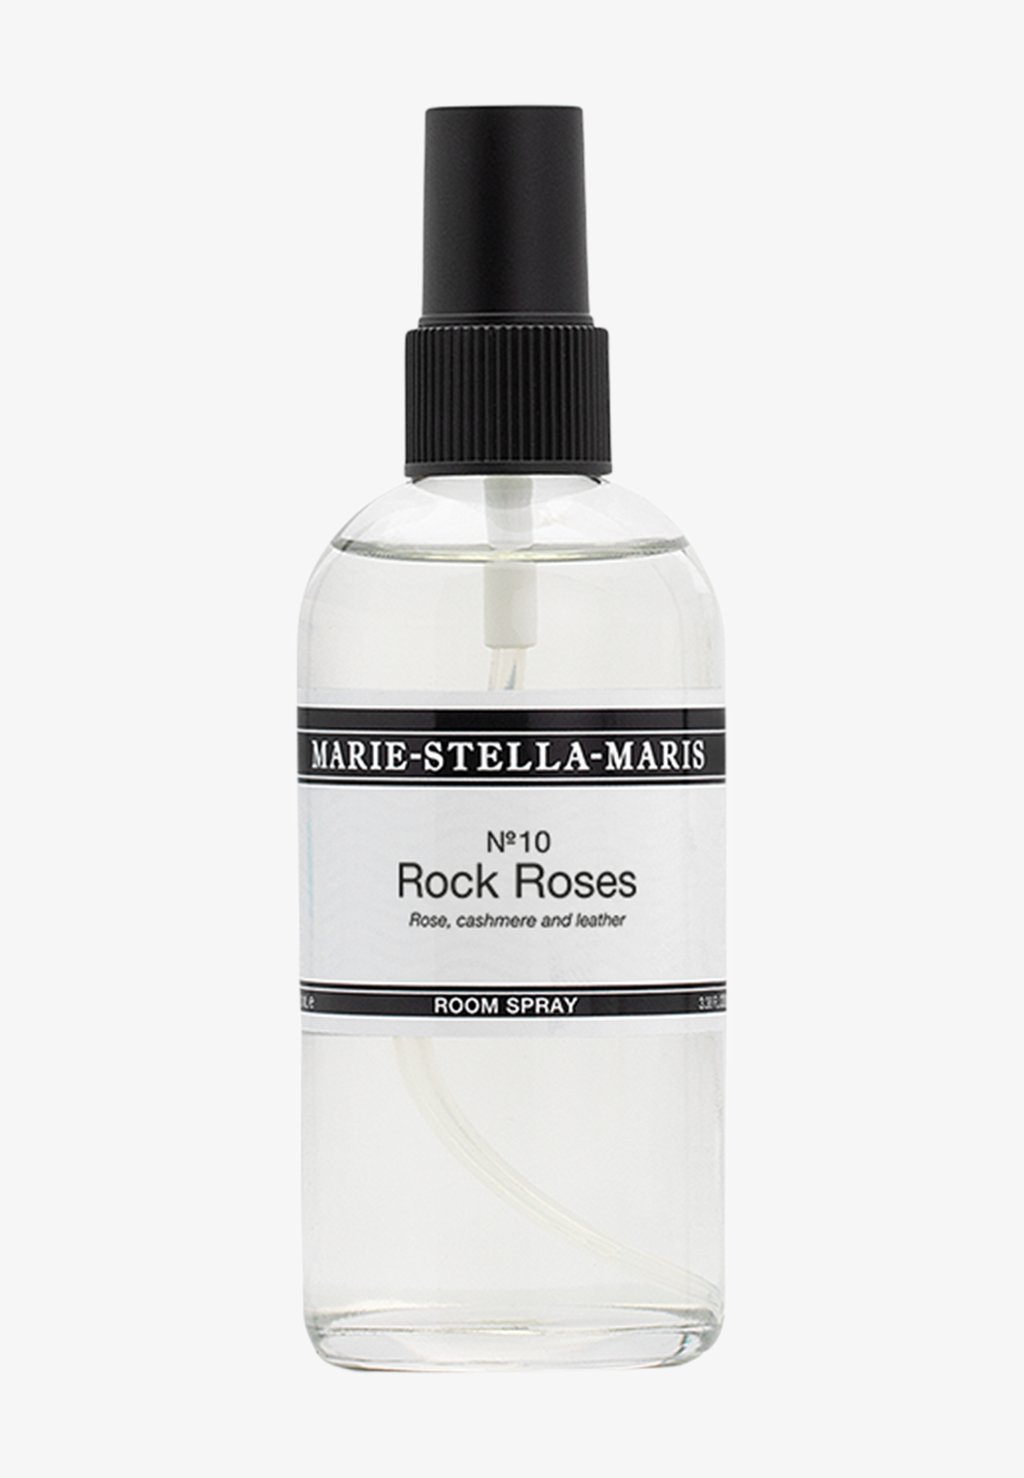 Аромат для комнаты Room Spray Rock Roses 500 Ml Marie-Stella-Maris